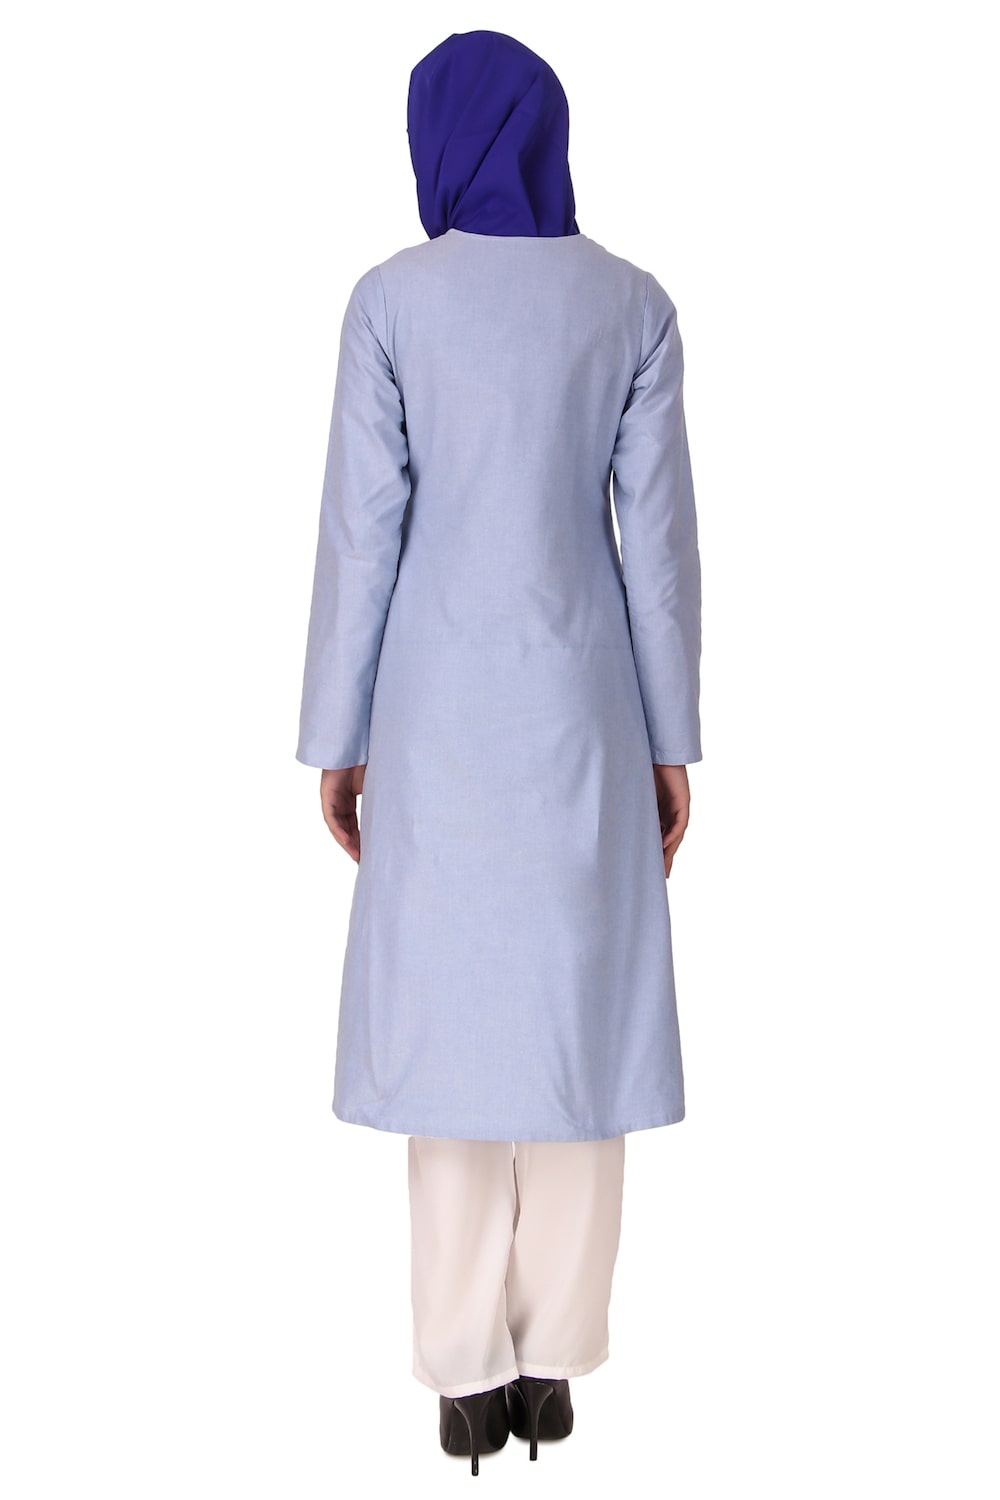 Blue Cotton Embroidered Salwar Kameez